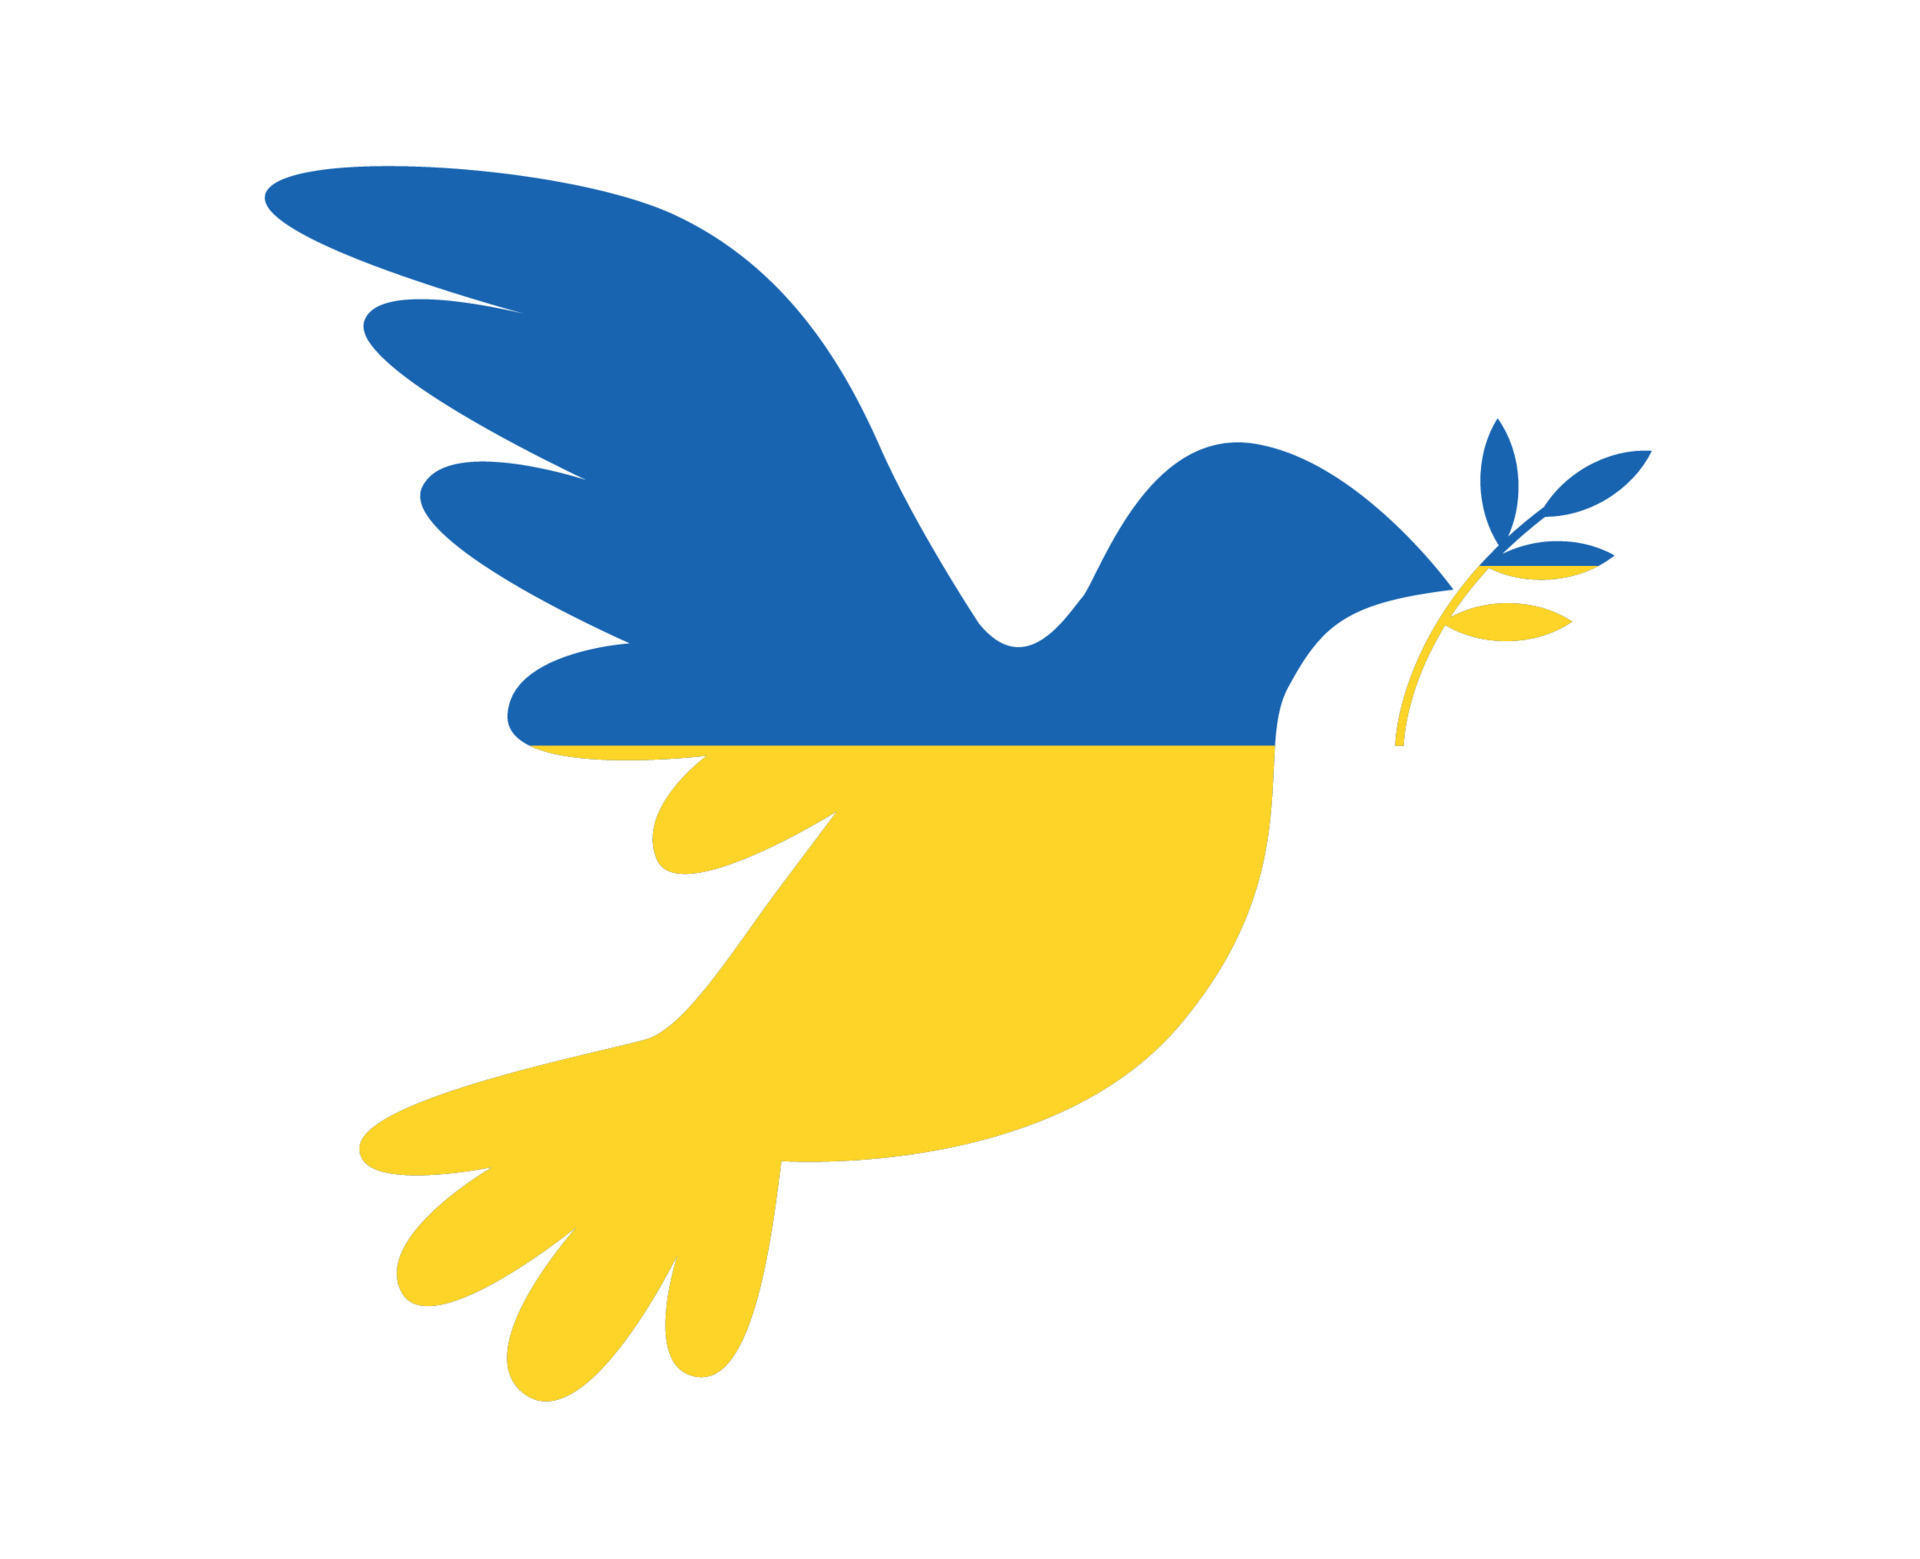 ukraine friedenstaube flag national europa vektor emblem symbol abstraktes  illustrationsdesign 7702899 Vektor Kunst bei Vecteezy